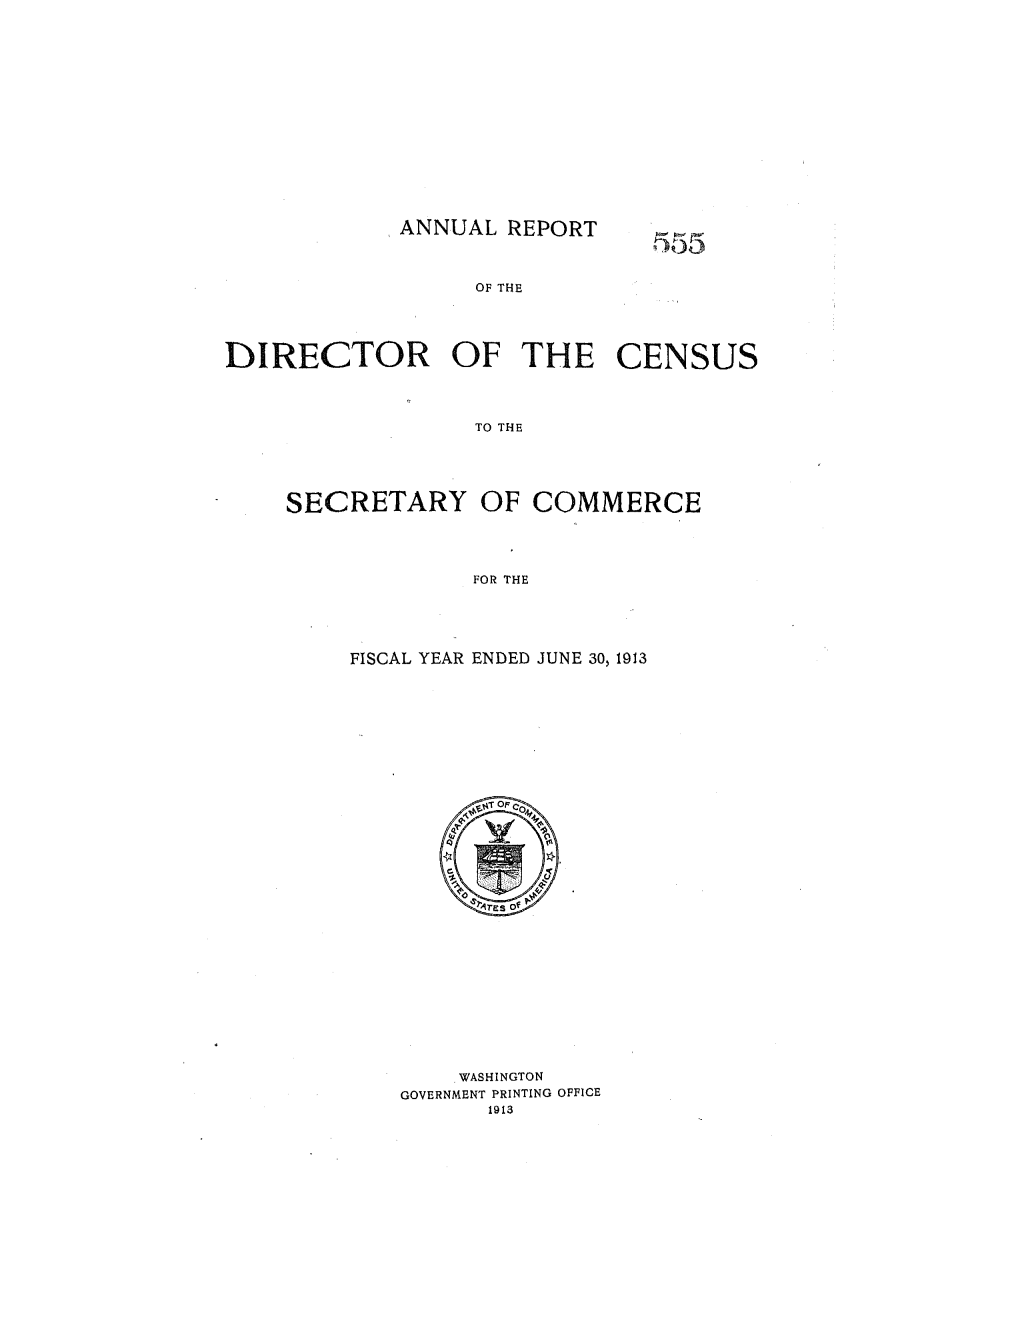 1913 Annual Census Report